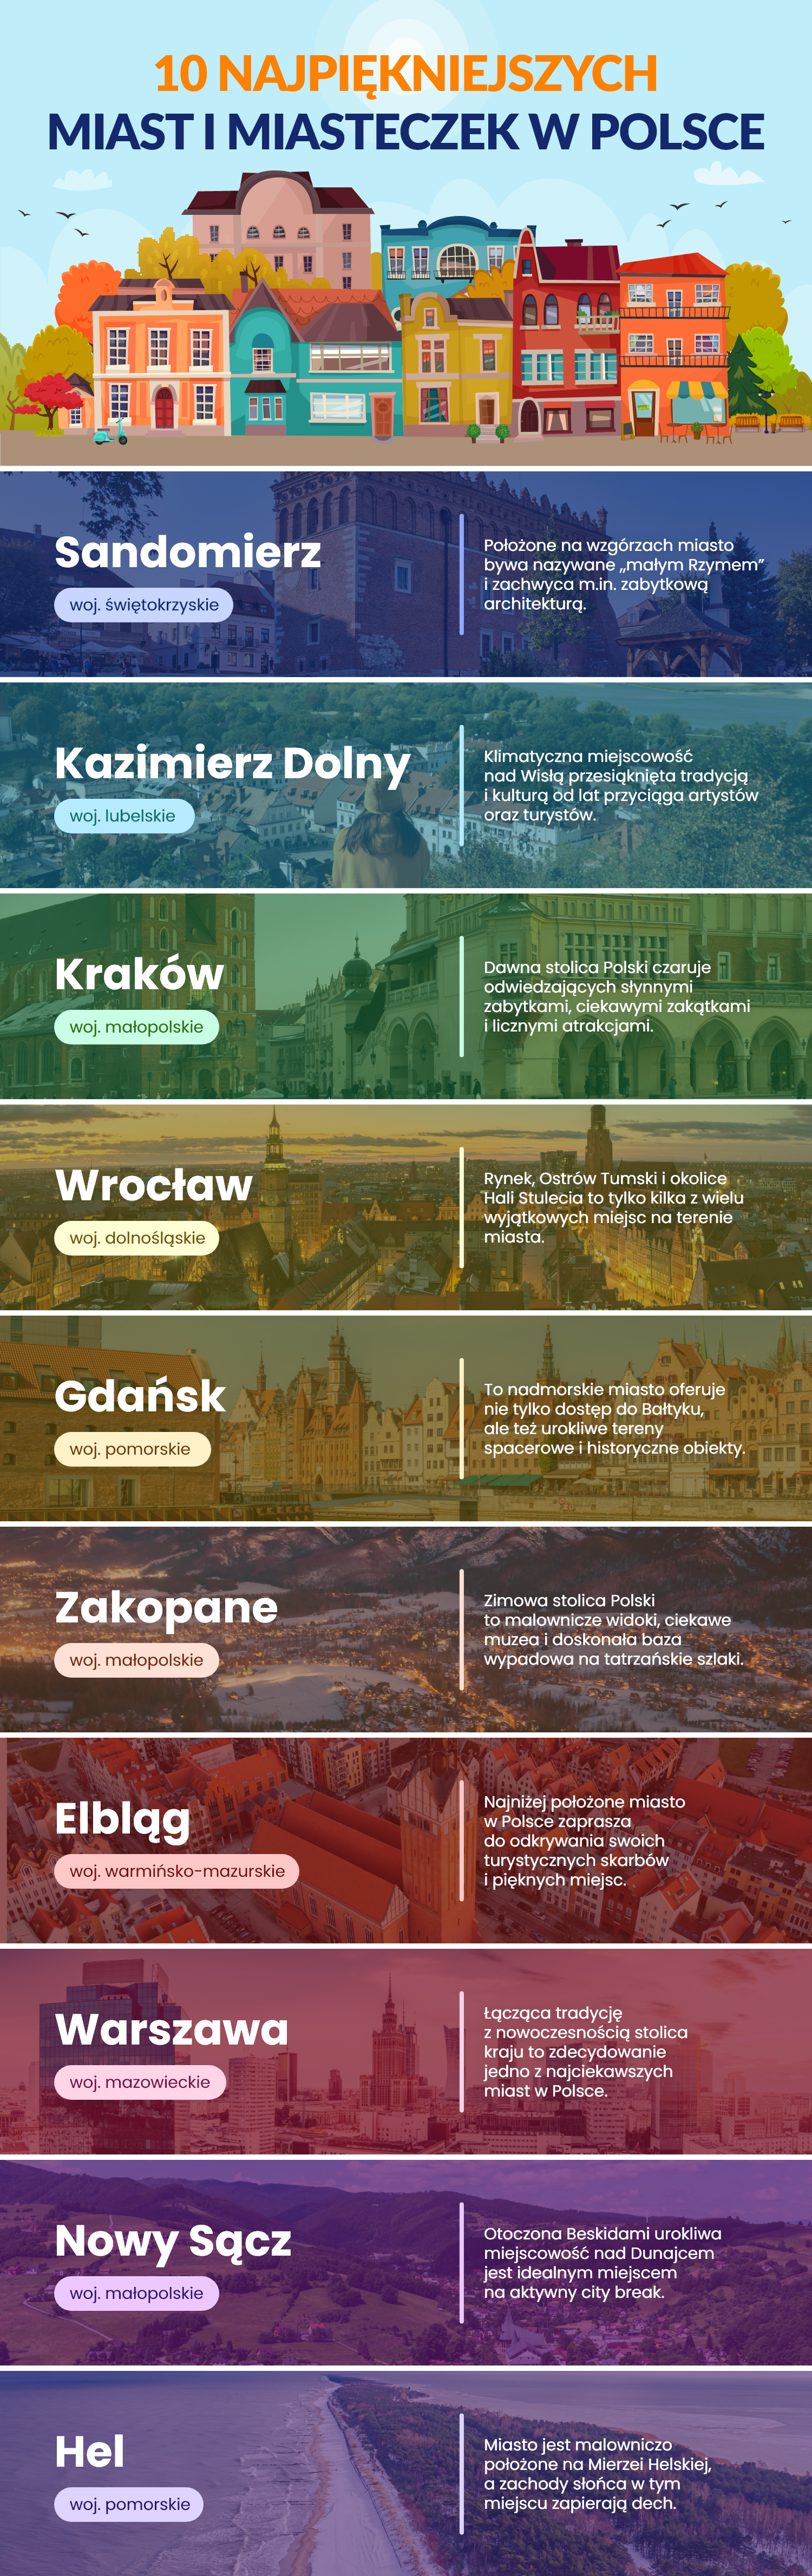 10 najpiękniejszych miast w Polsce - infografika